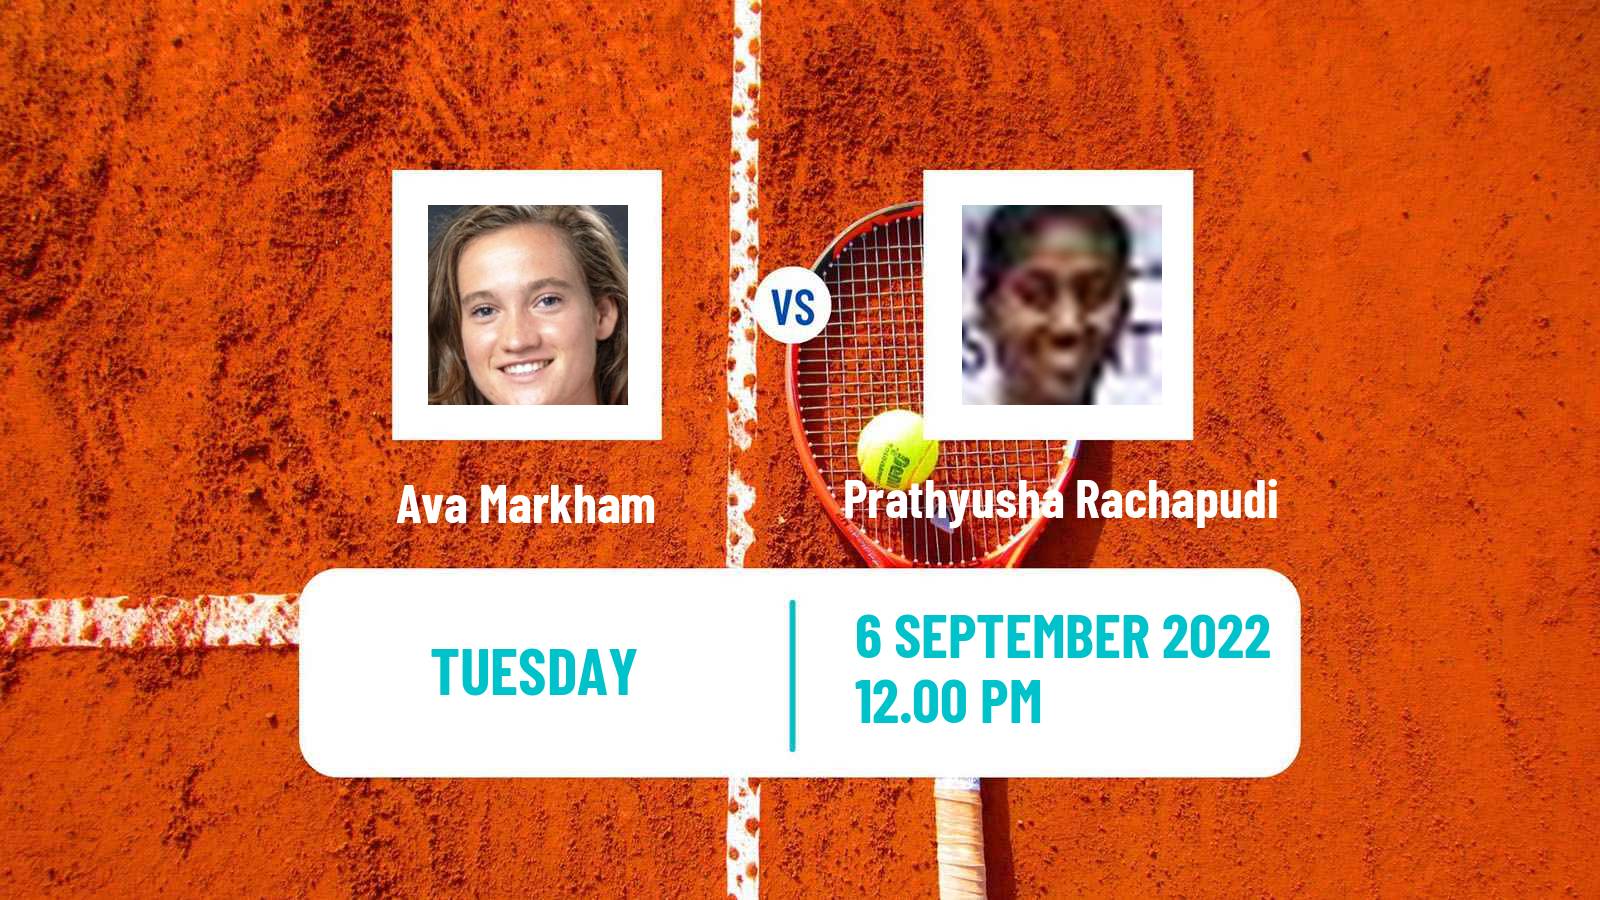 Tennis ITF Tournaments Ava Markham - Prathyusha Rachapudi